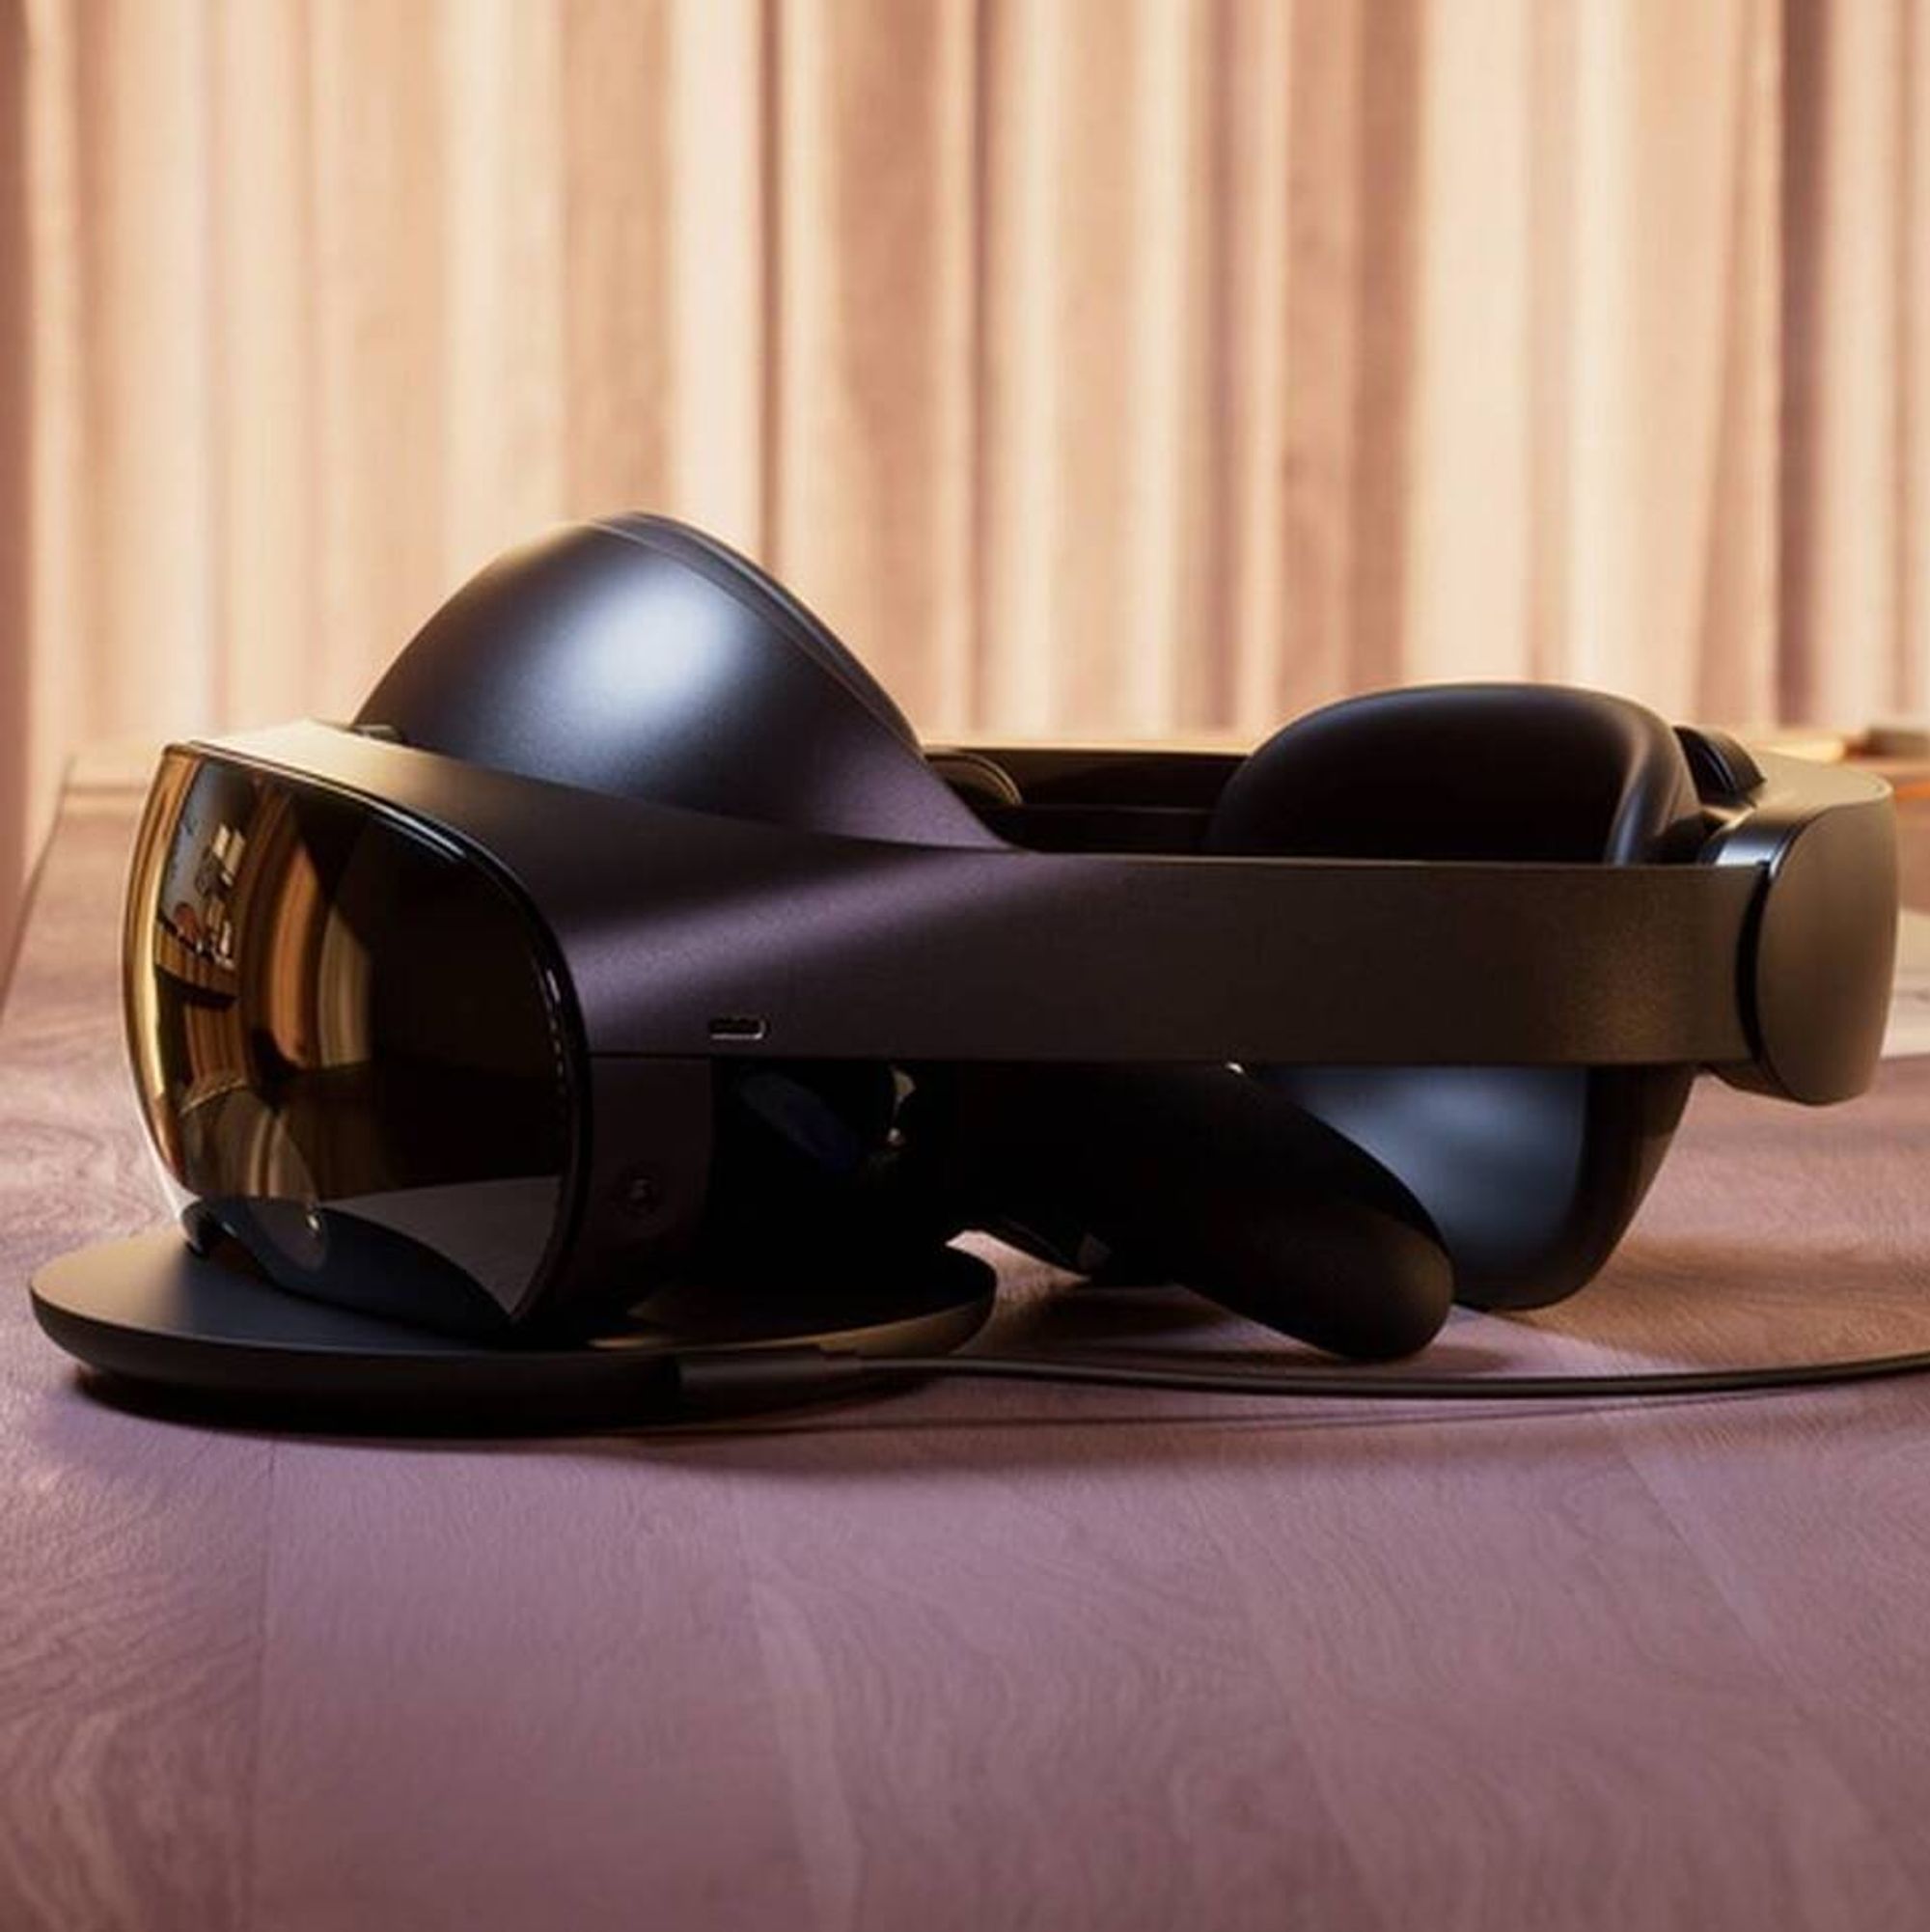 Meta satser på at deres nye VR-briller skal gjøre de jæ... hybridmøtene  bedre - Insidetelecom.no